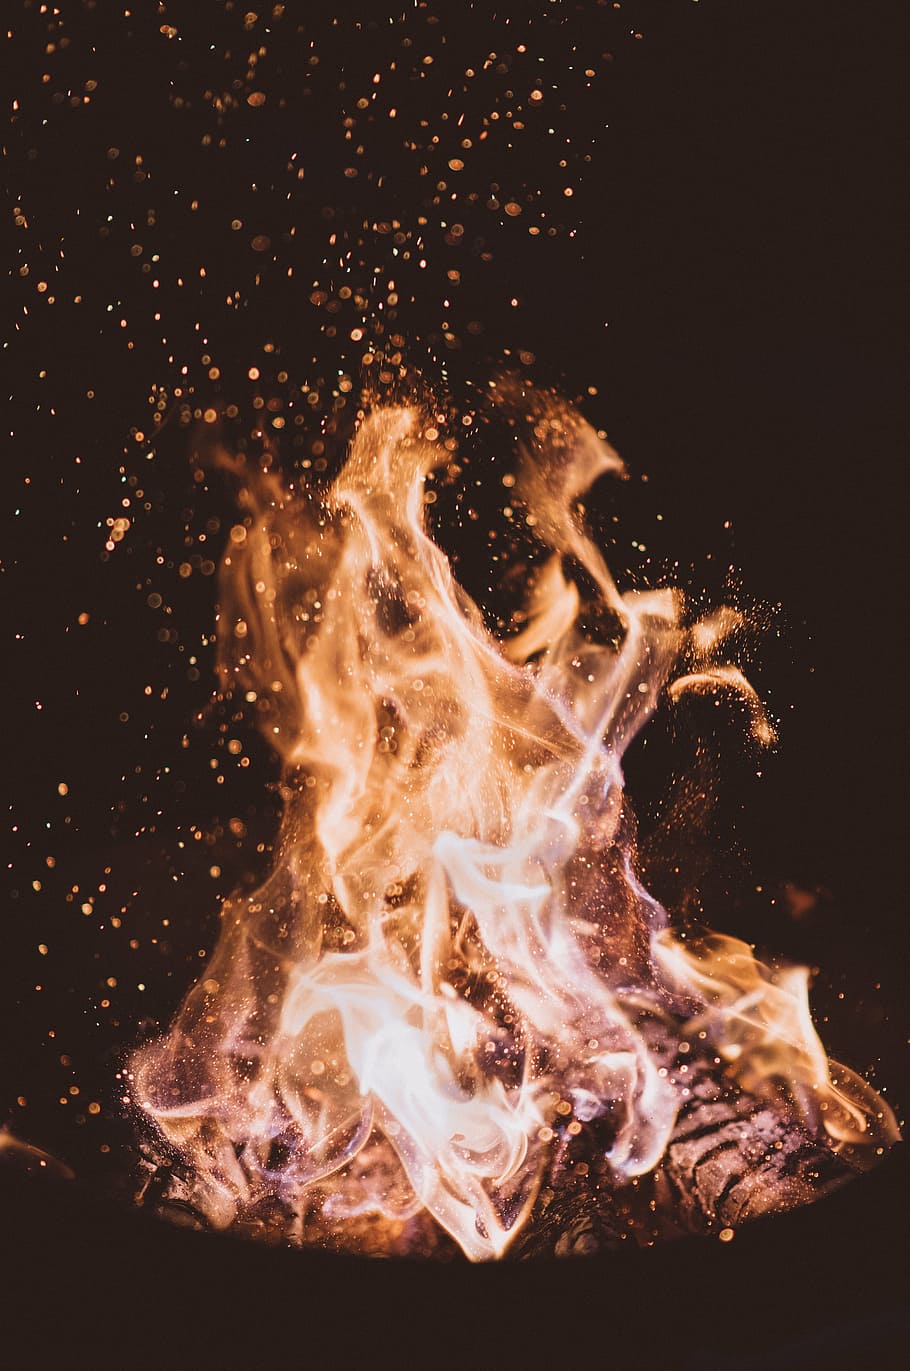 fotografi selang waktu, api, cahaya, kayu bakar, arang, abu, panas, api unggun, air, gerak